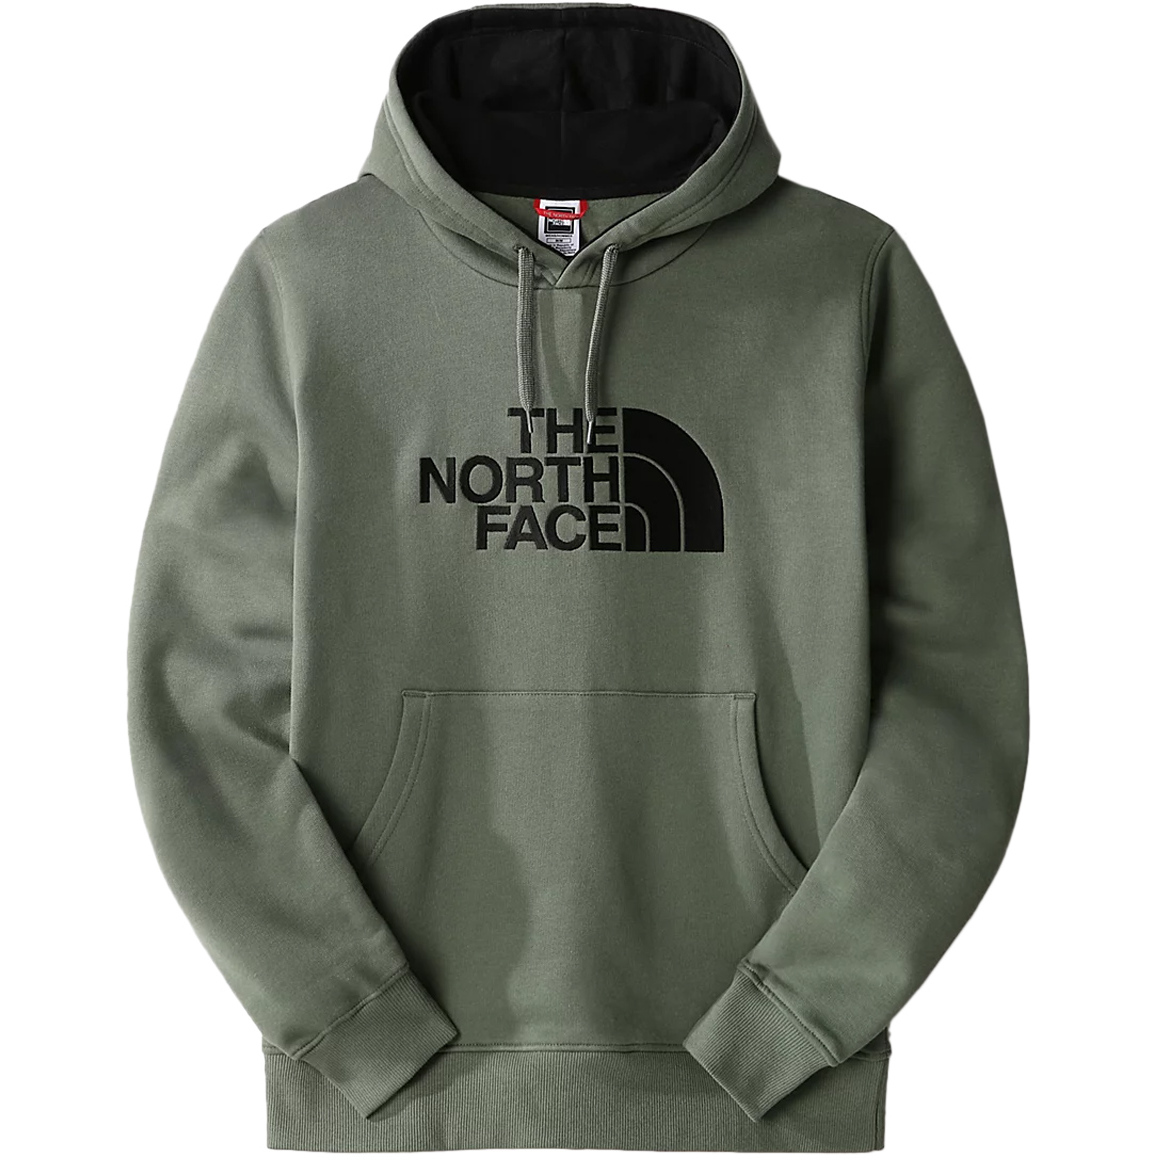 THE NORTH FACE-DREW PEAK PULLOVER HOODIE TNF BLACK - Sweatshirt